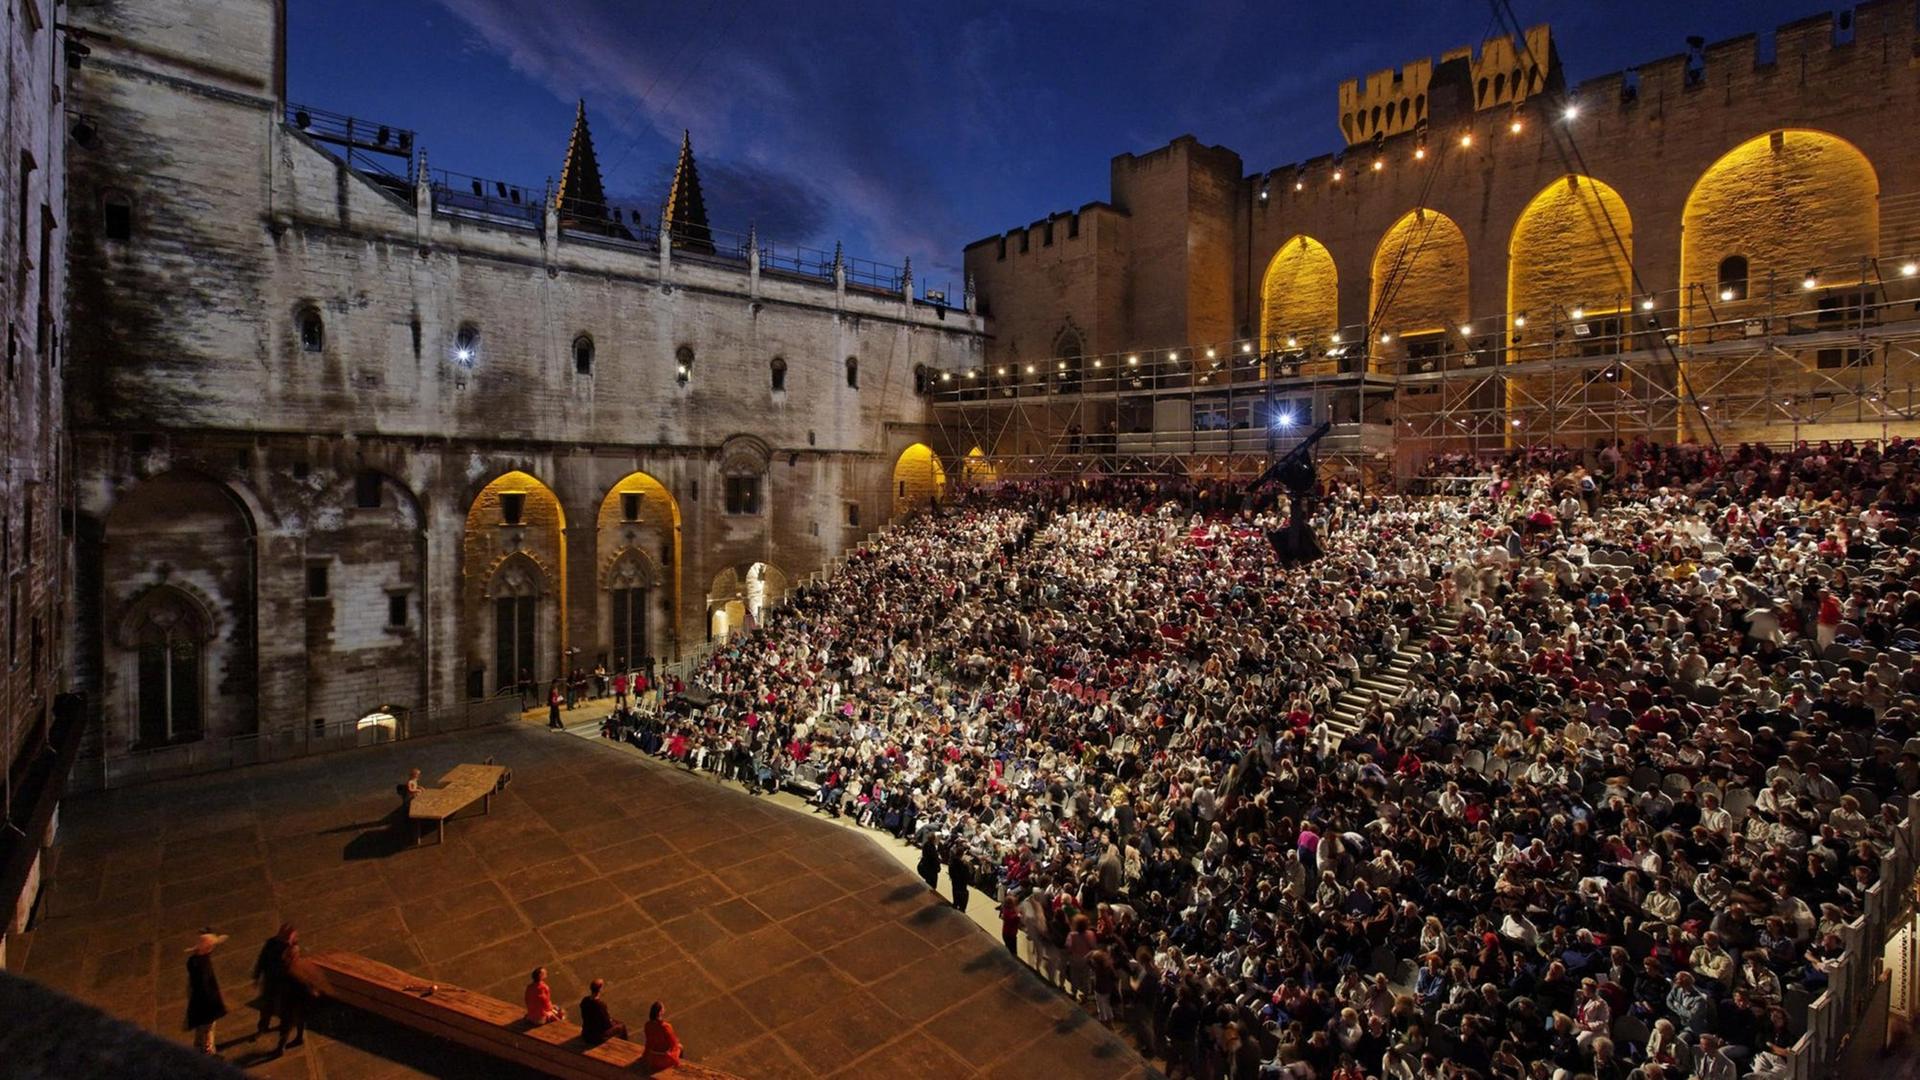 Theaterfestival von Avignon hat begonnen